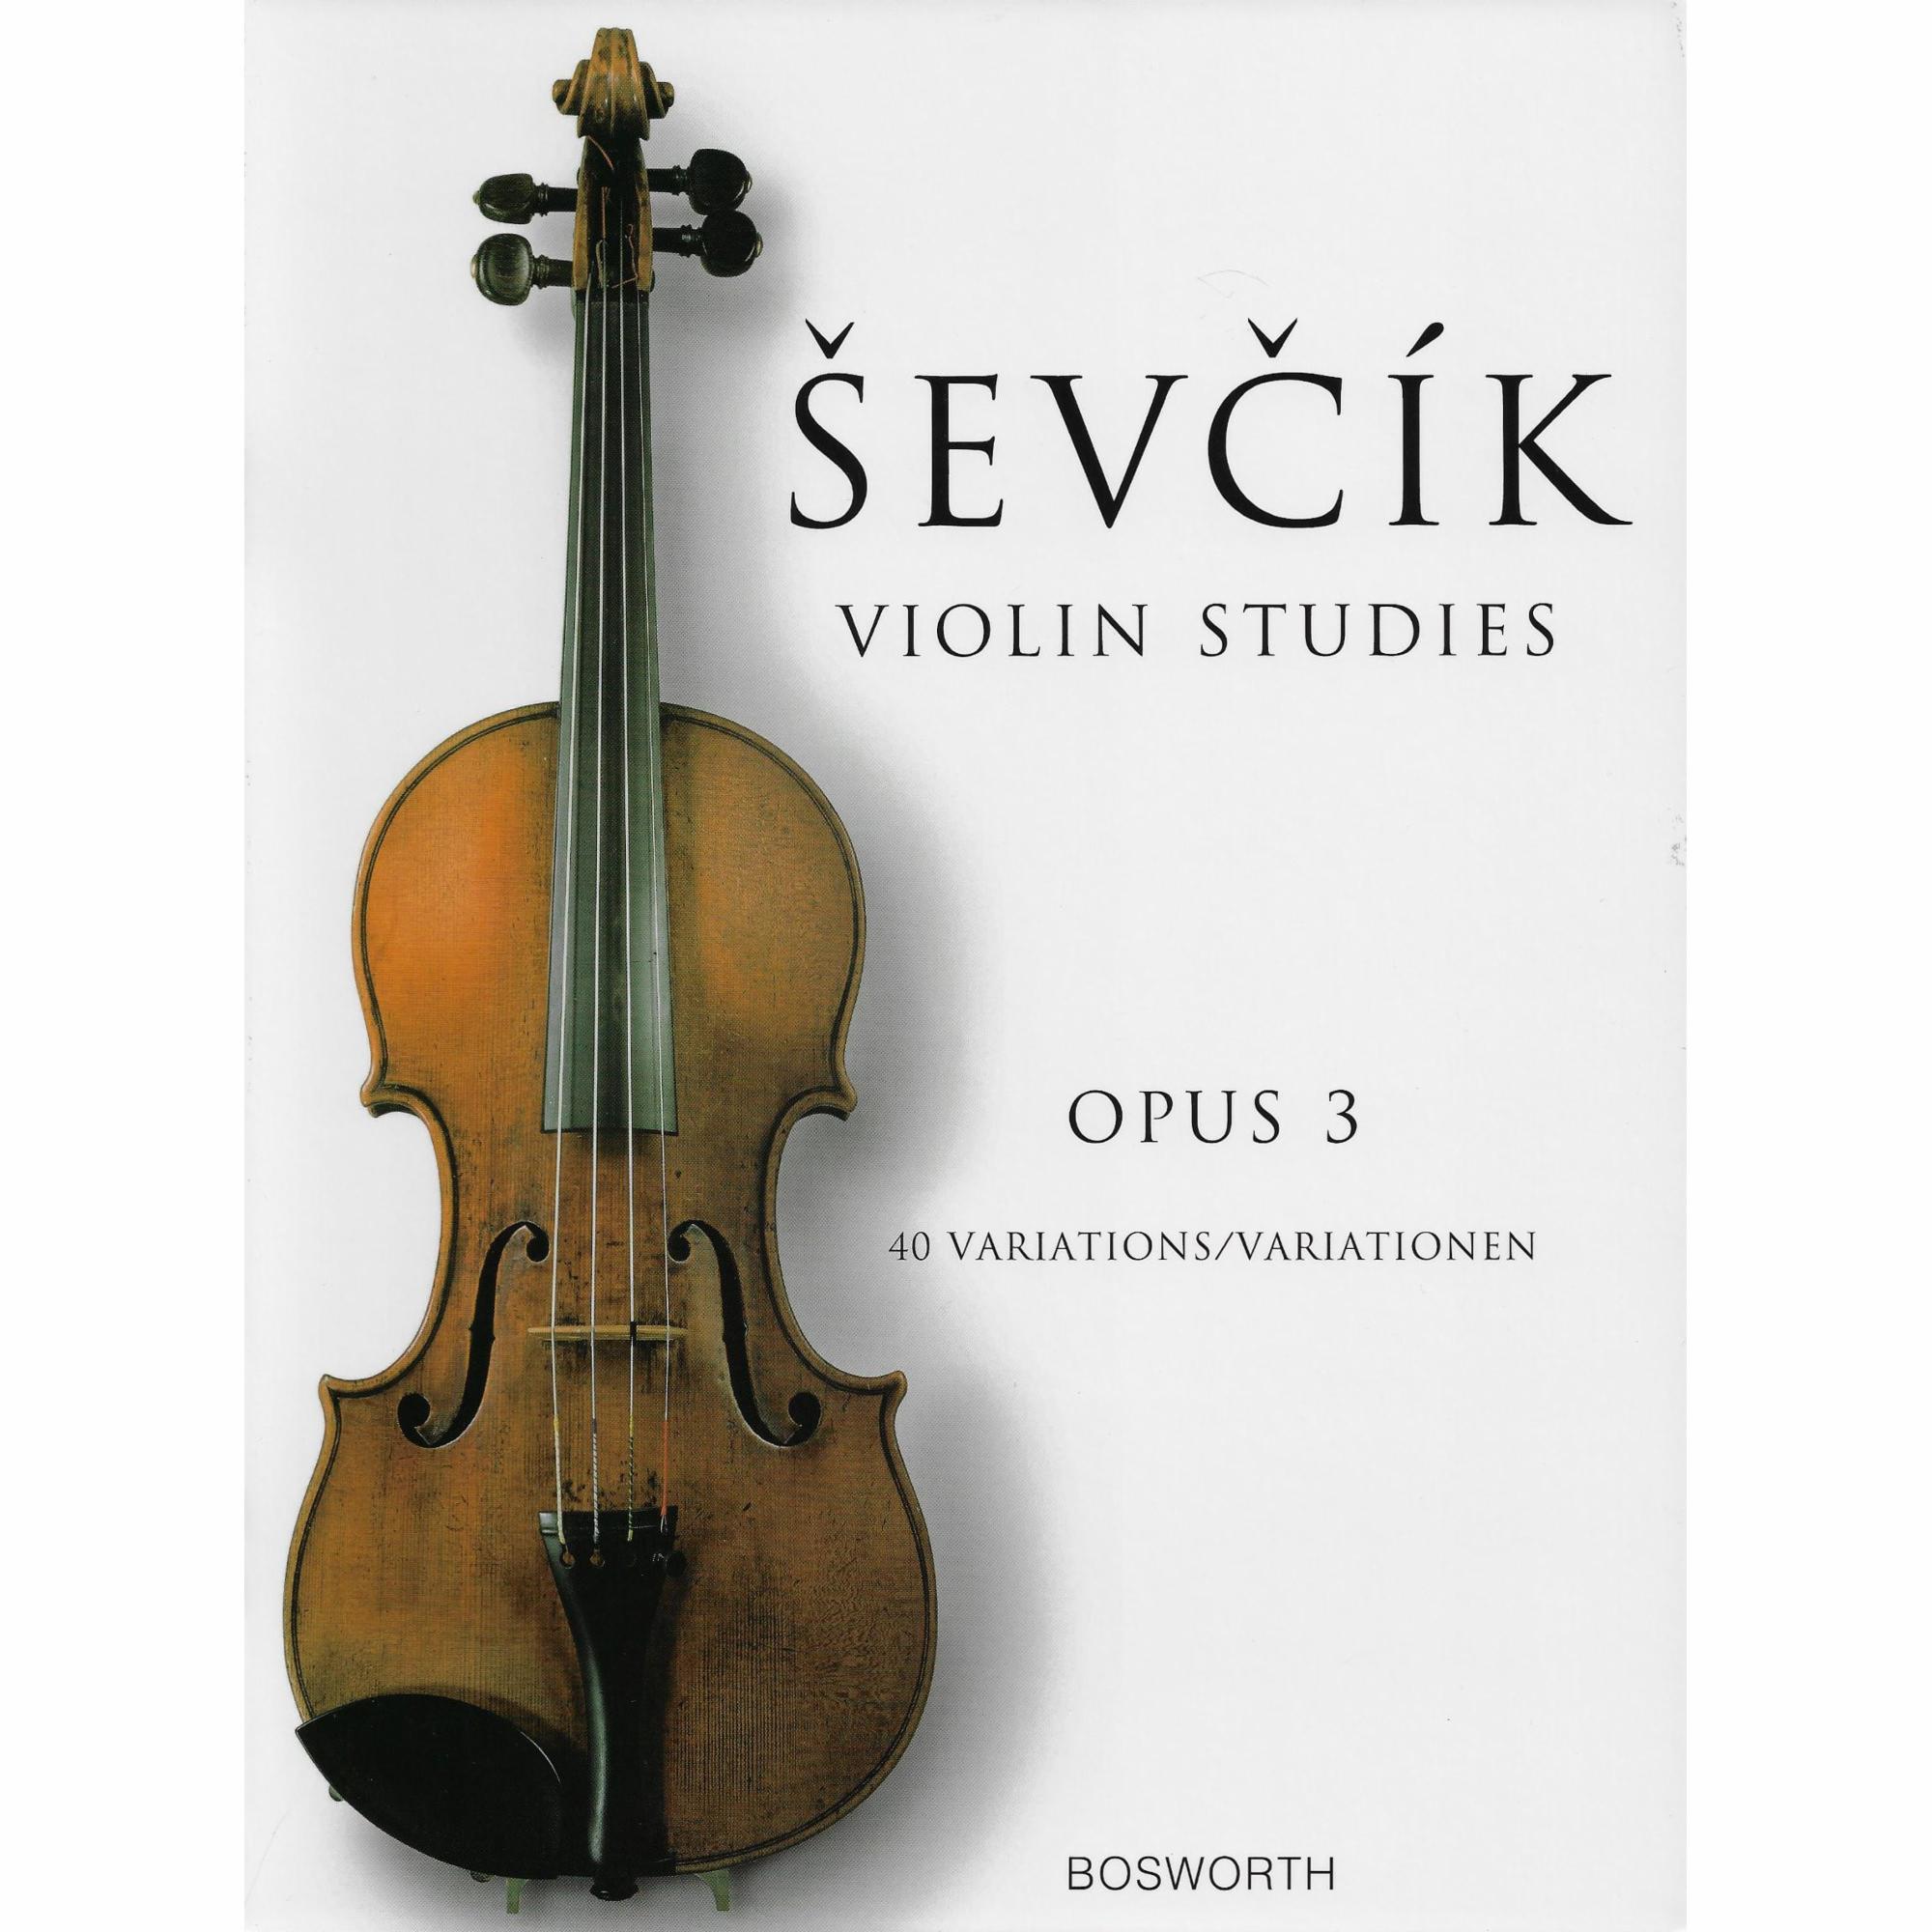 Sevcik -- 40 Variations, Op. 3 for Violin